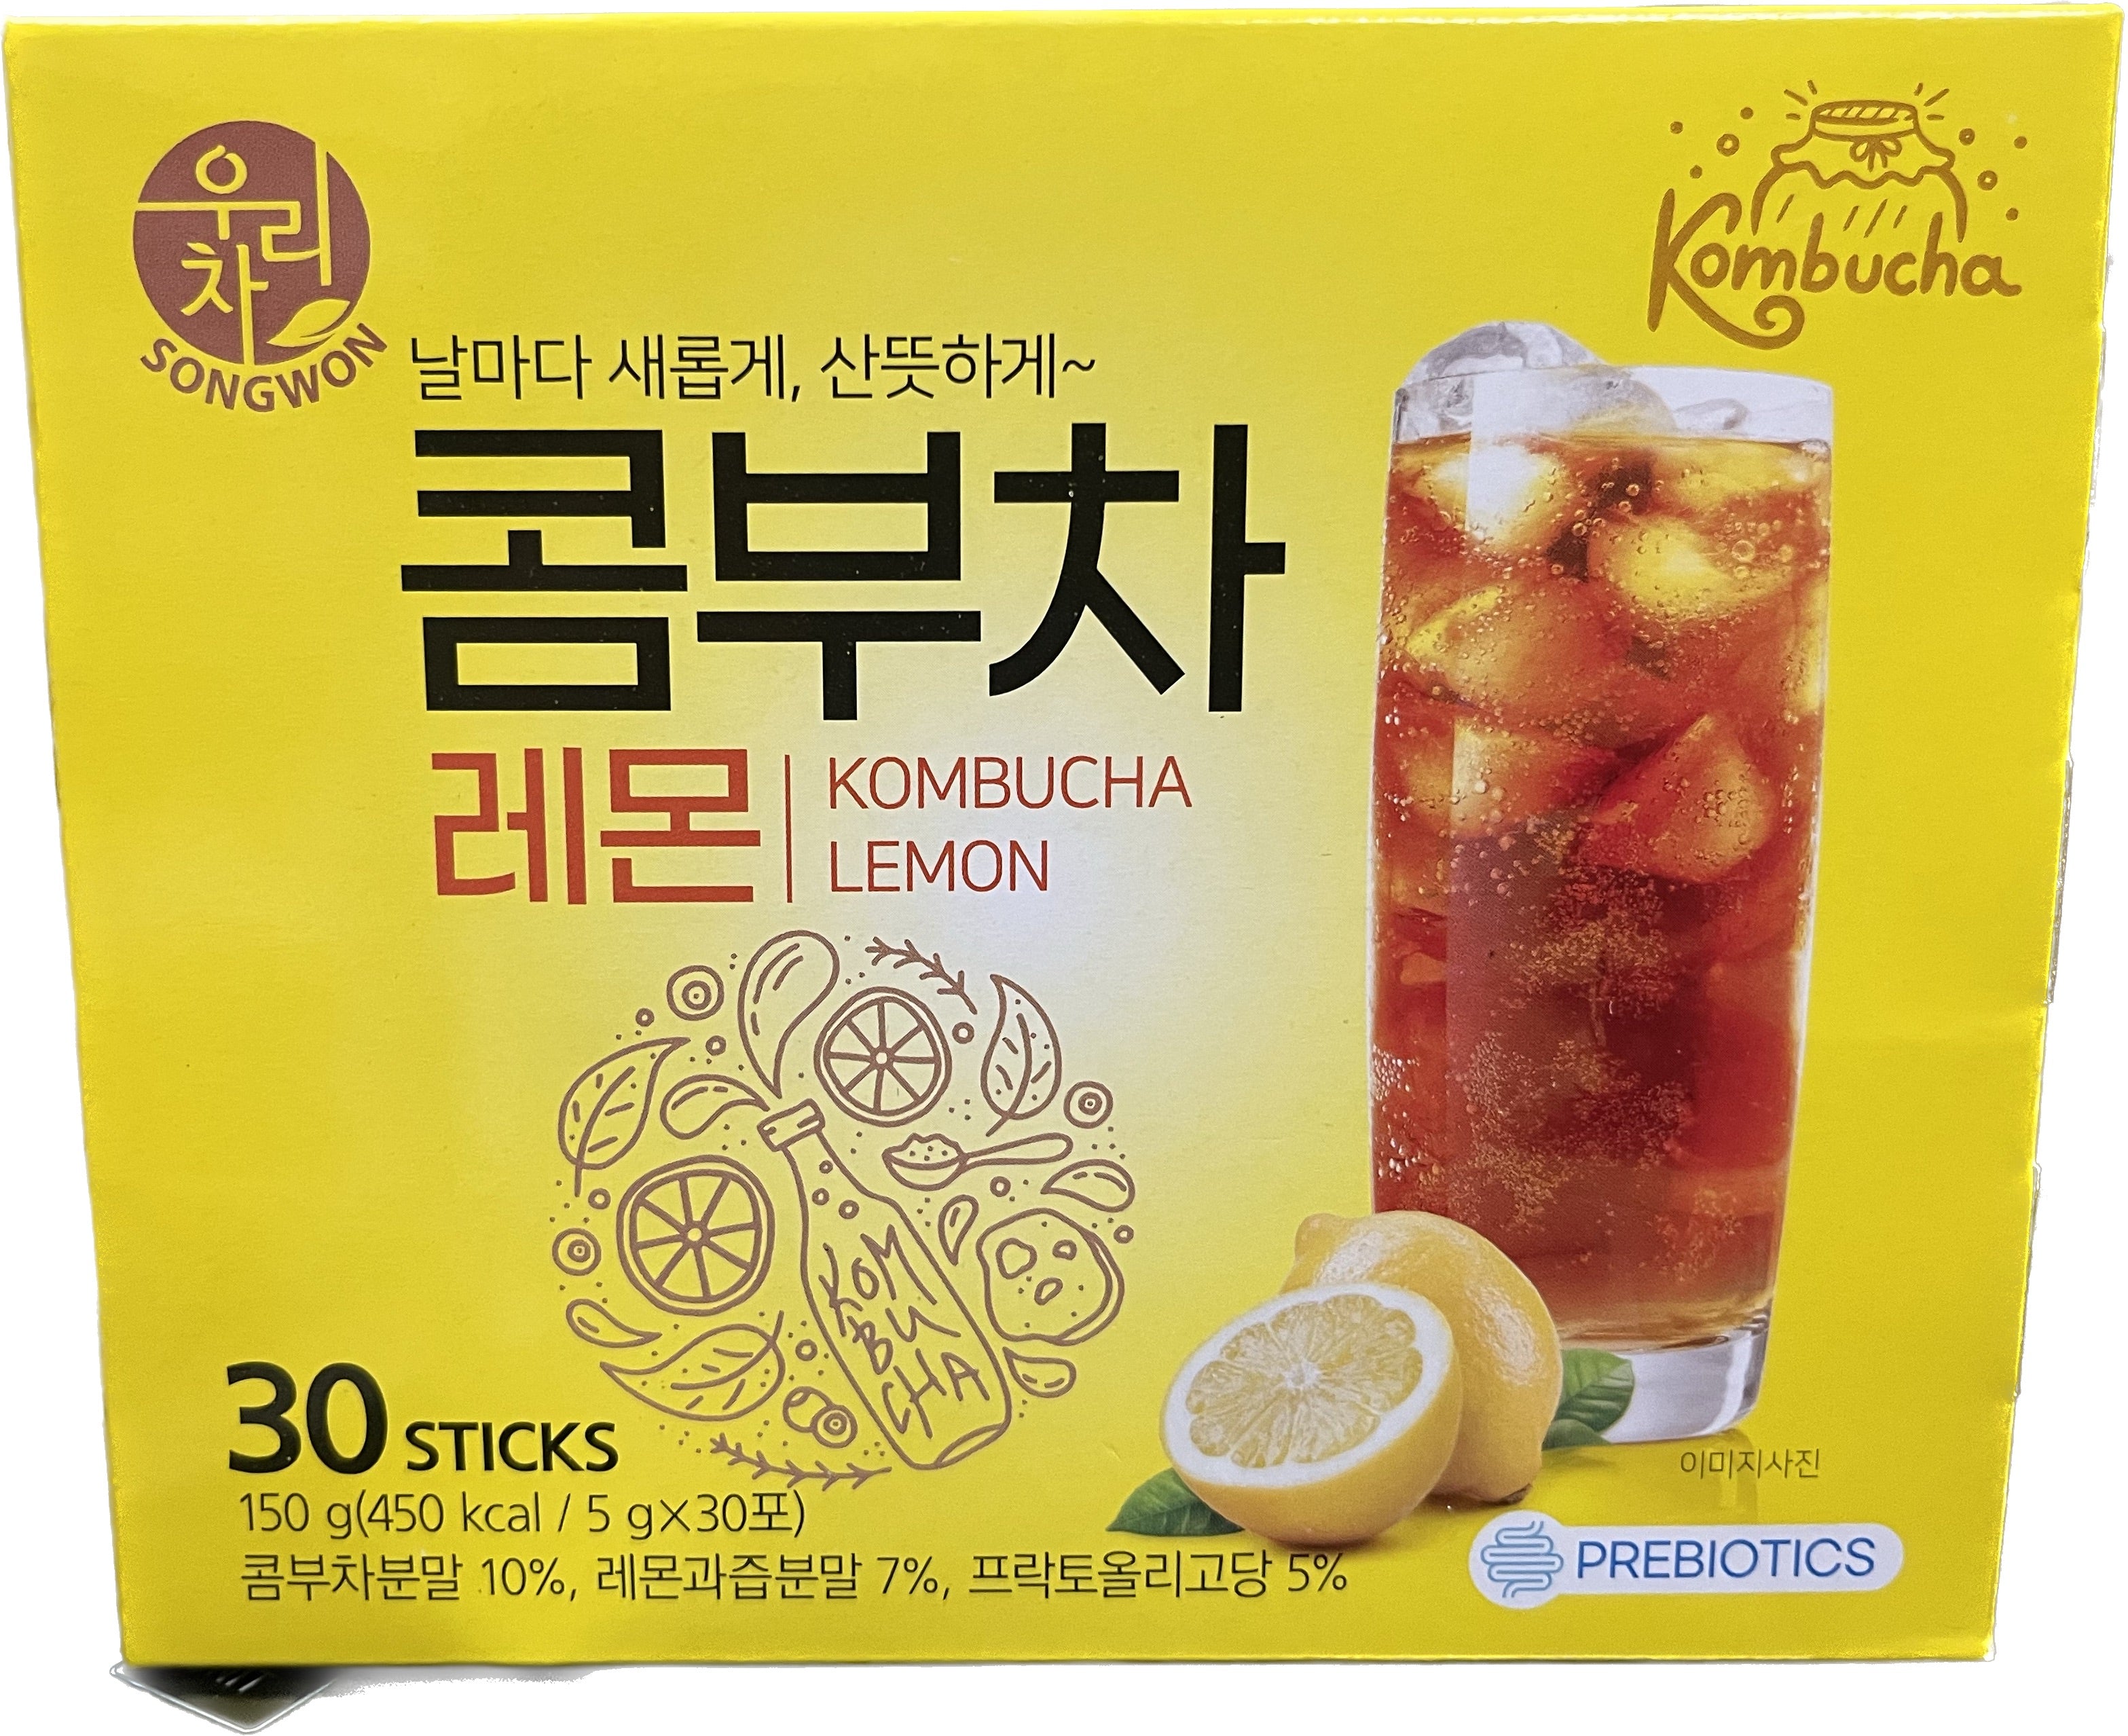 Songwon Kombucha Lemon Mix 30 Sticks-1